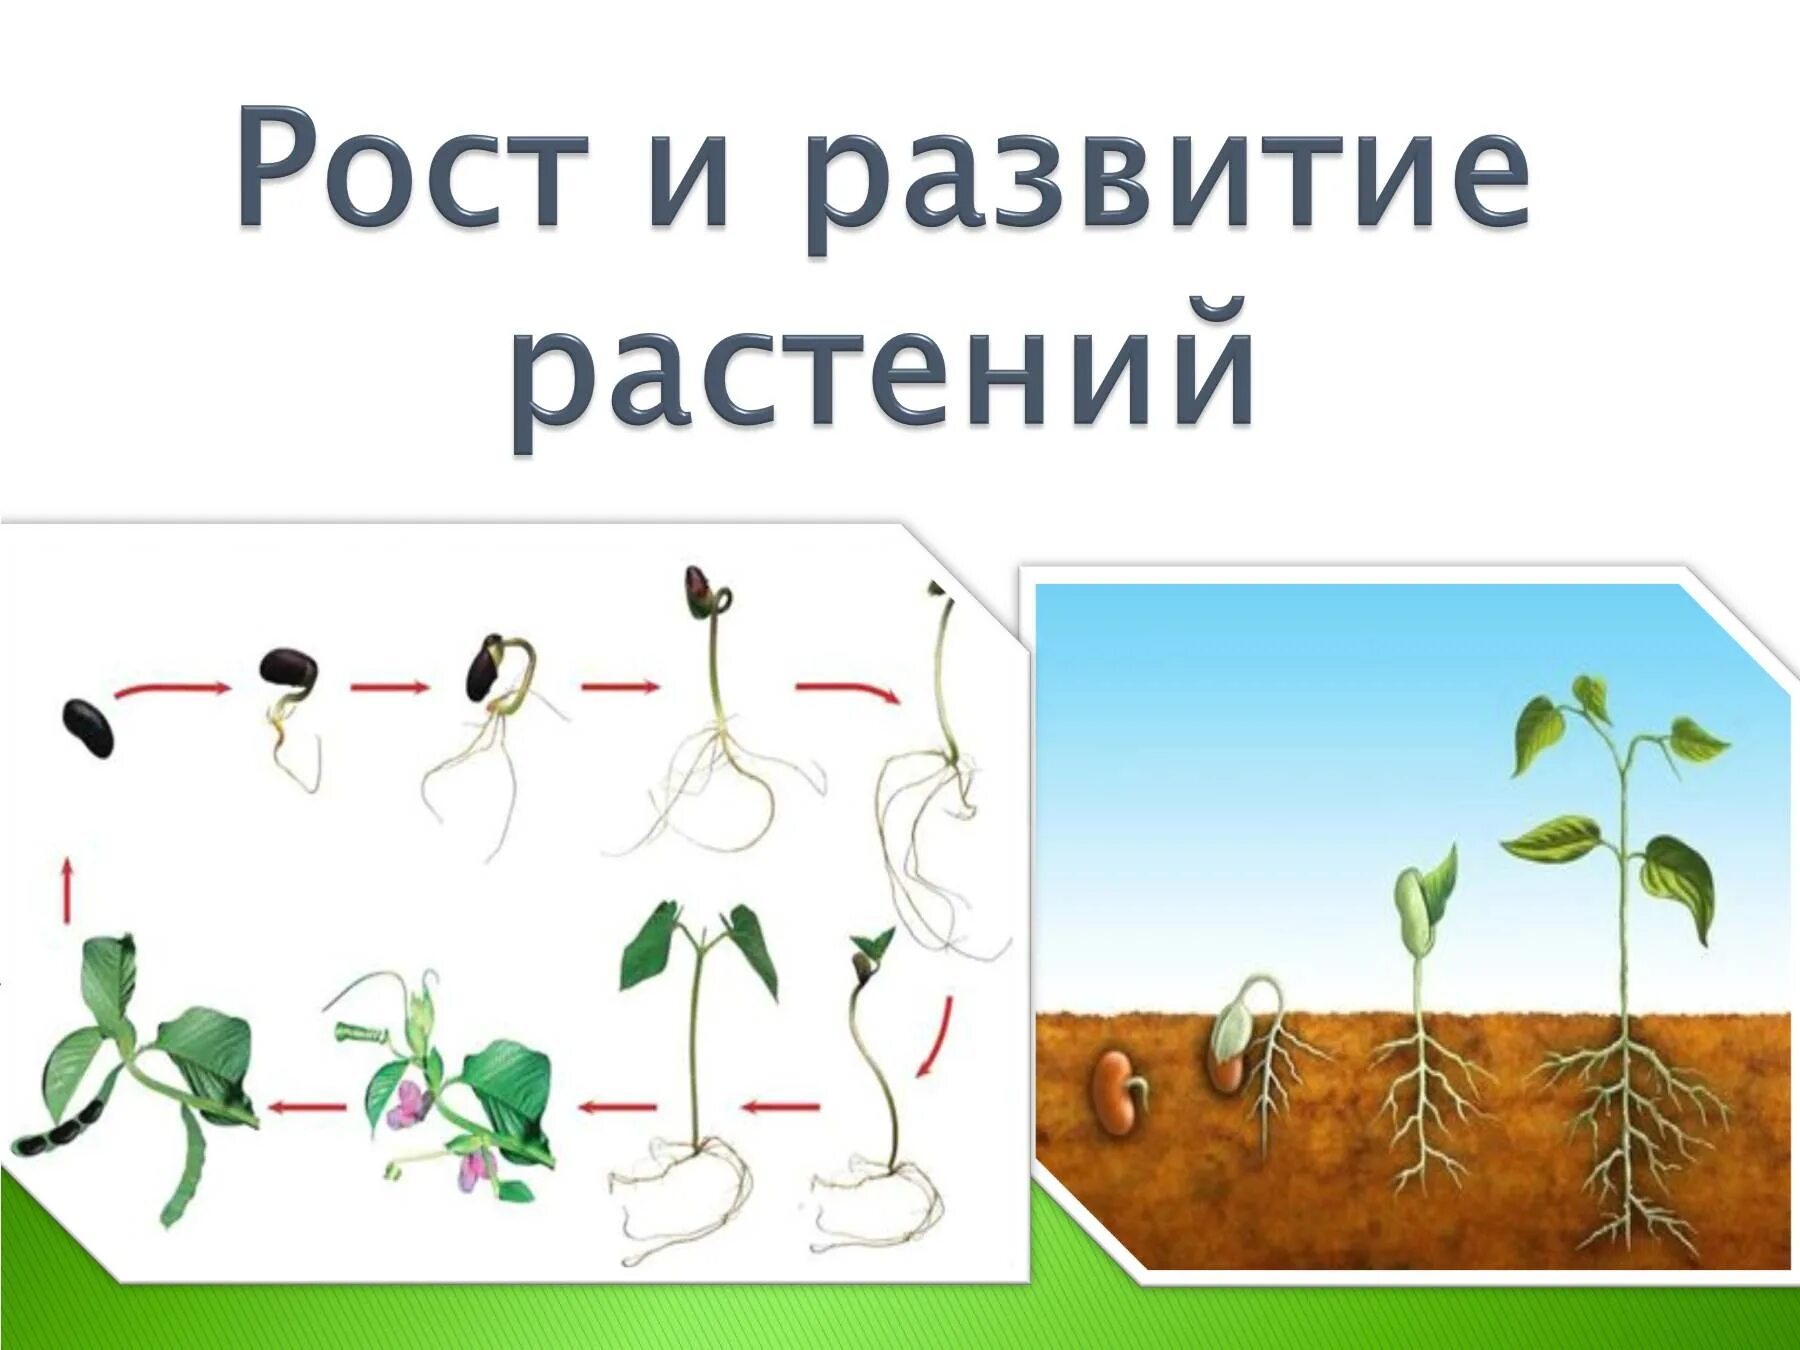 Рост биология 9 класс. Рост и развитие растений. Ьос т и развитие растений. Этапы роста цветка. Схема роста растения.